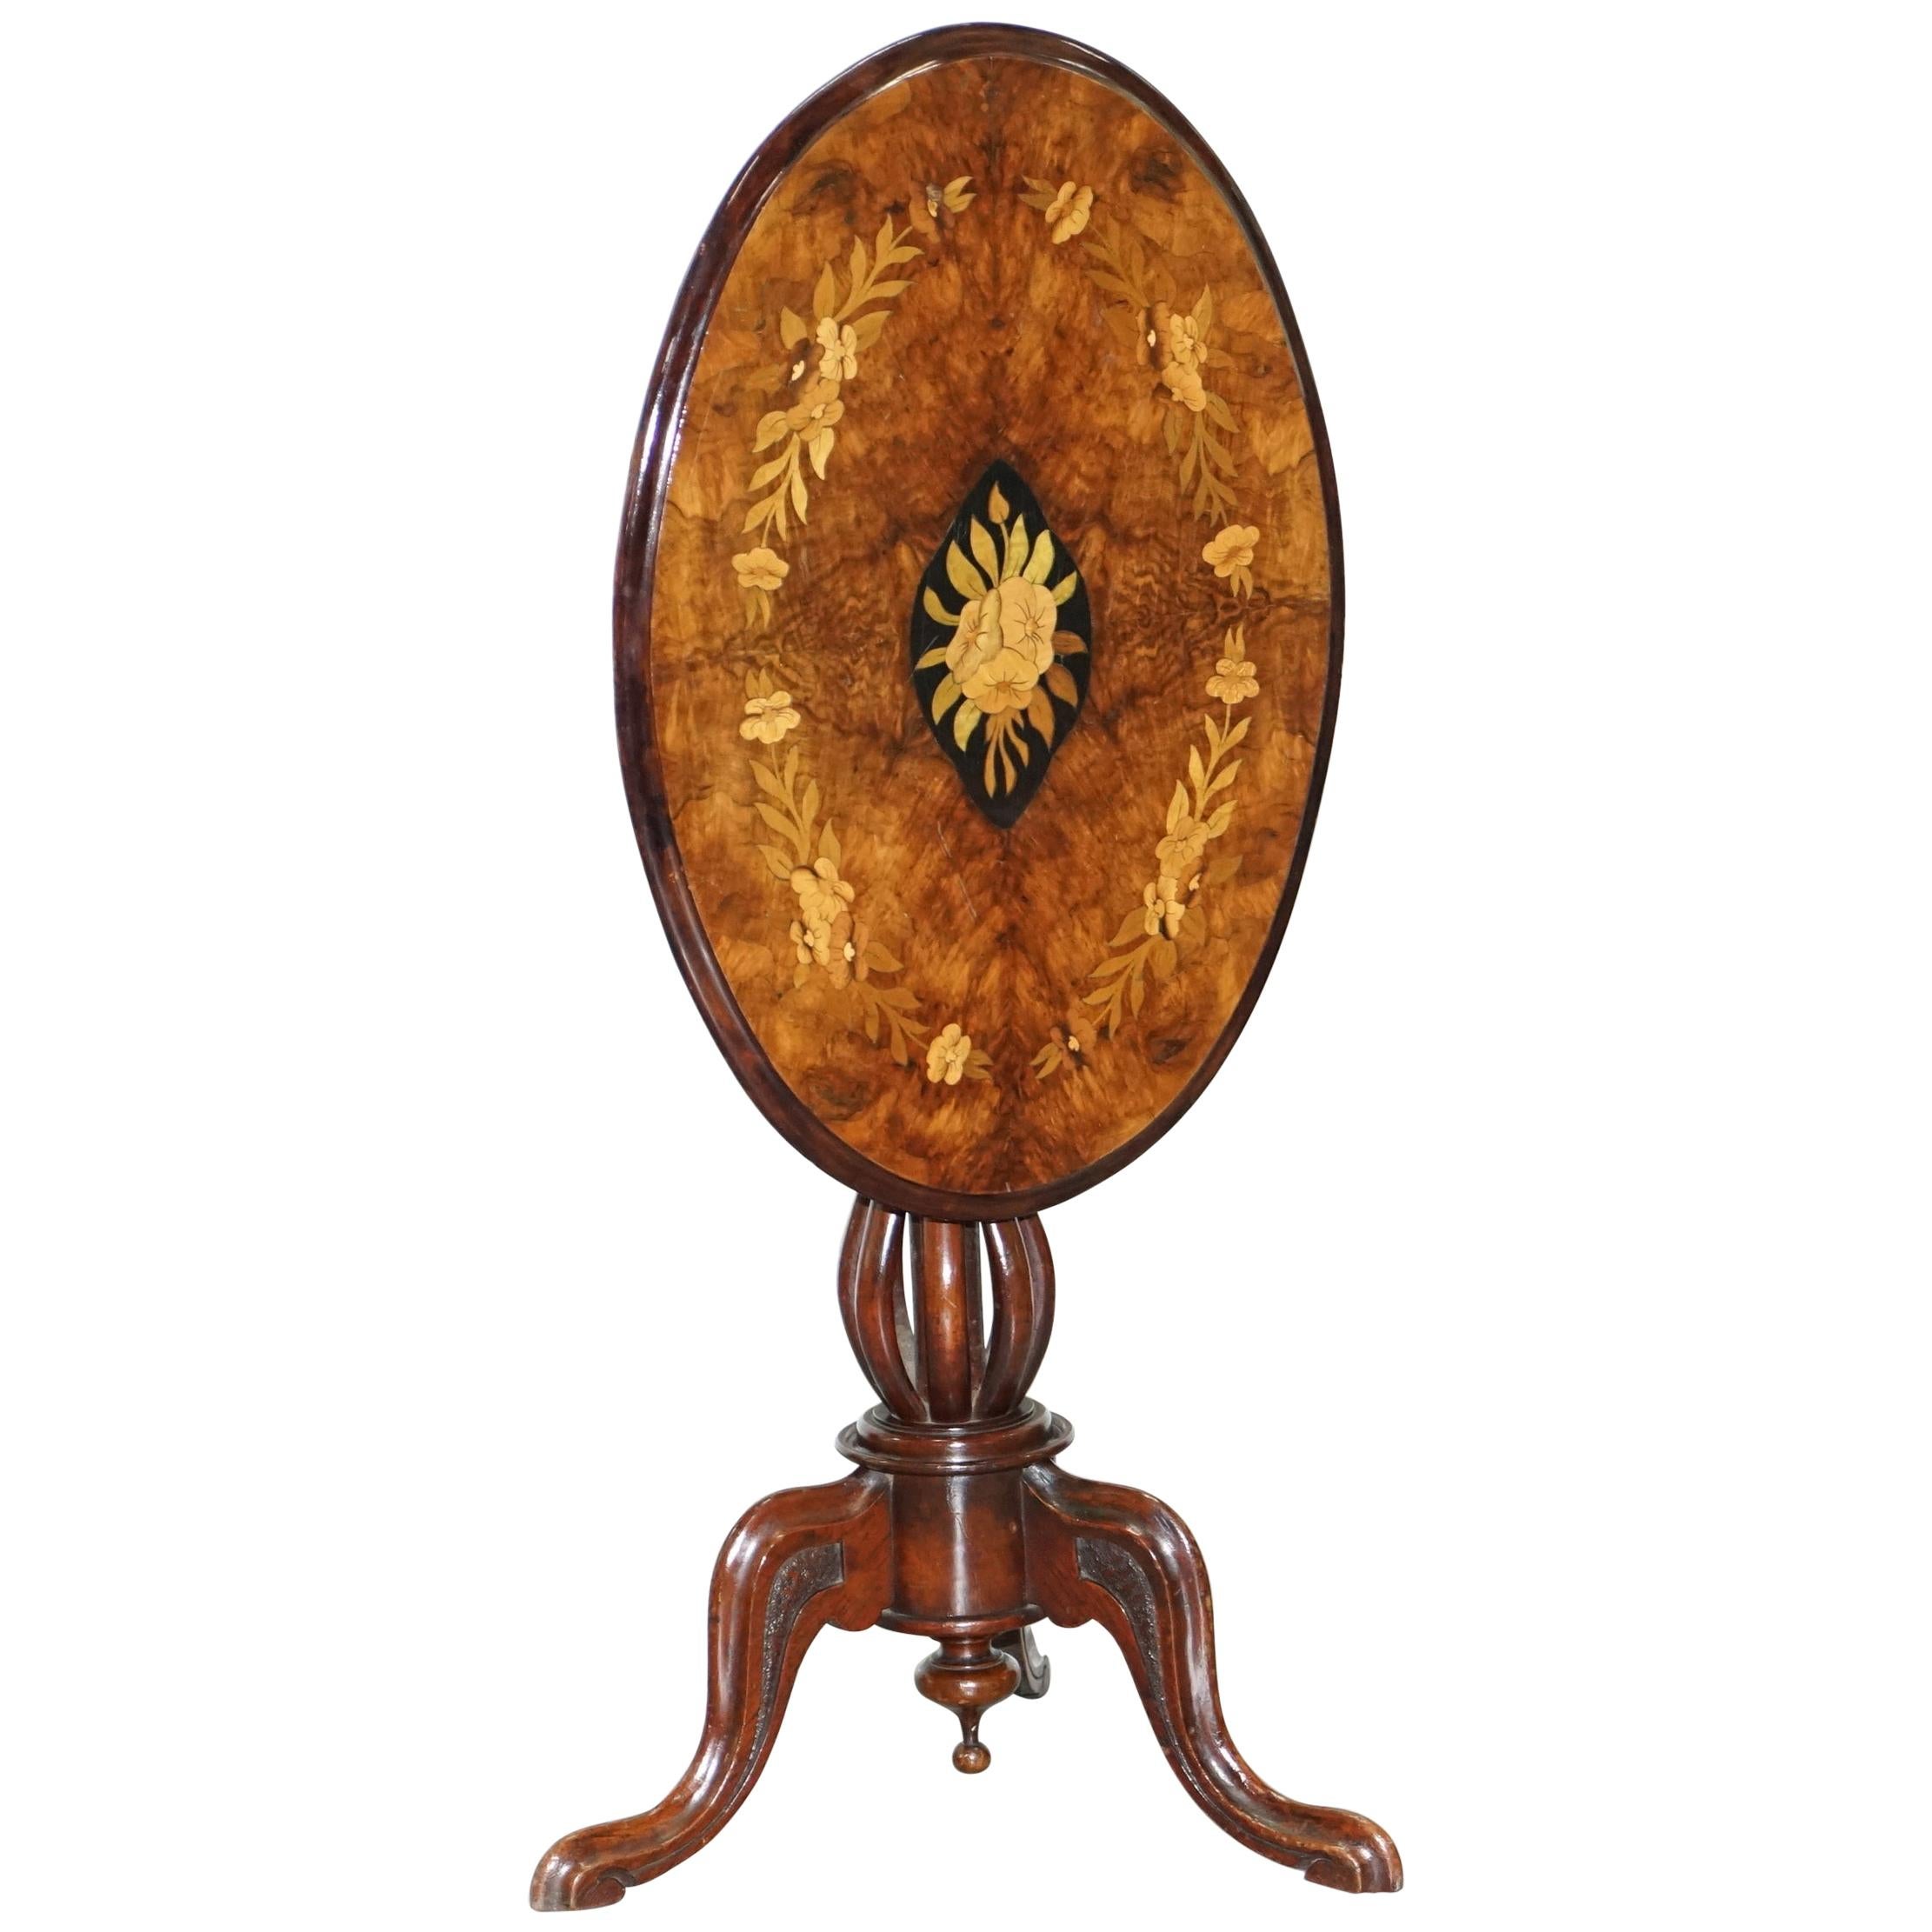 Ovaler viktorianischer Beistelltisch aus Nussbaum mit Intarsien und Klappplatte, bauchig